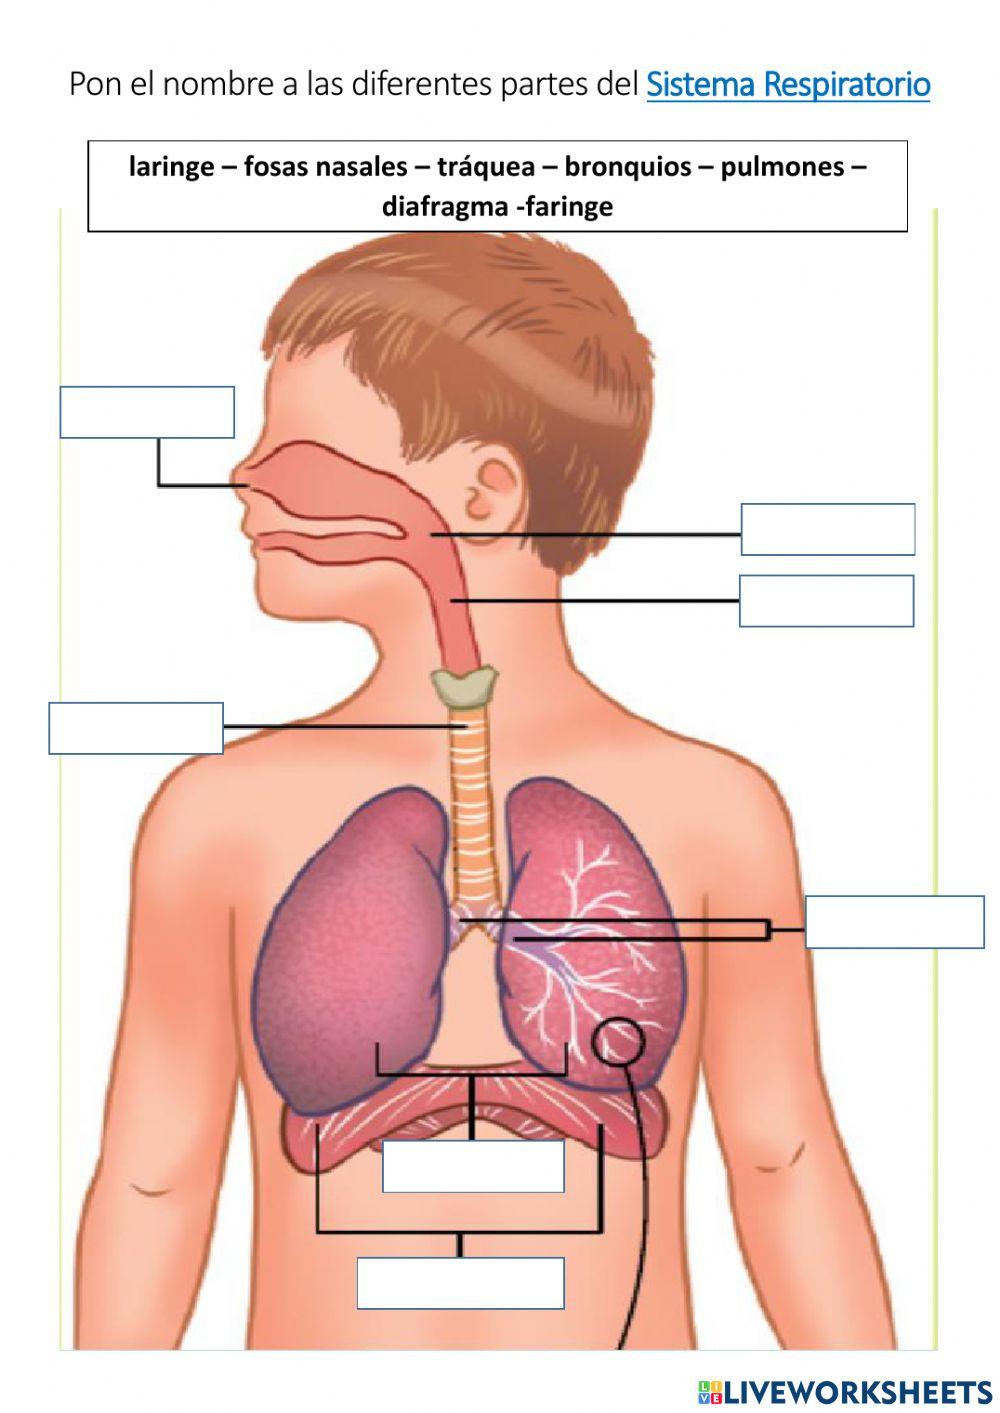 El aparato respiratorio